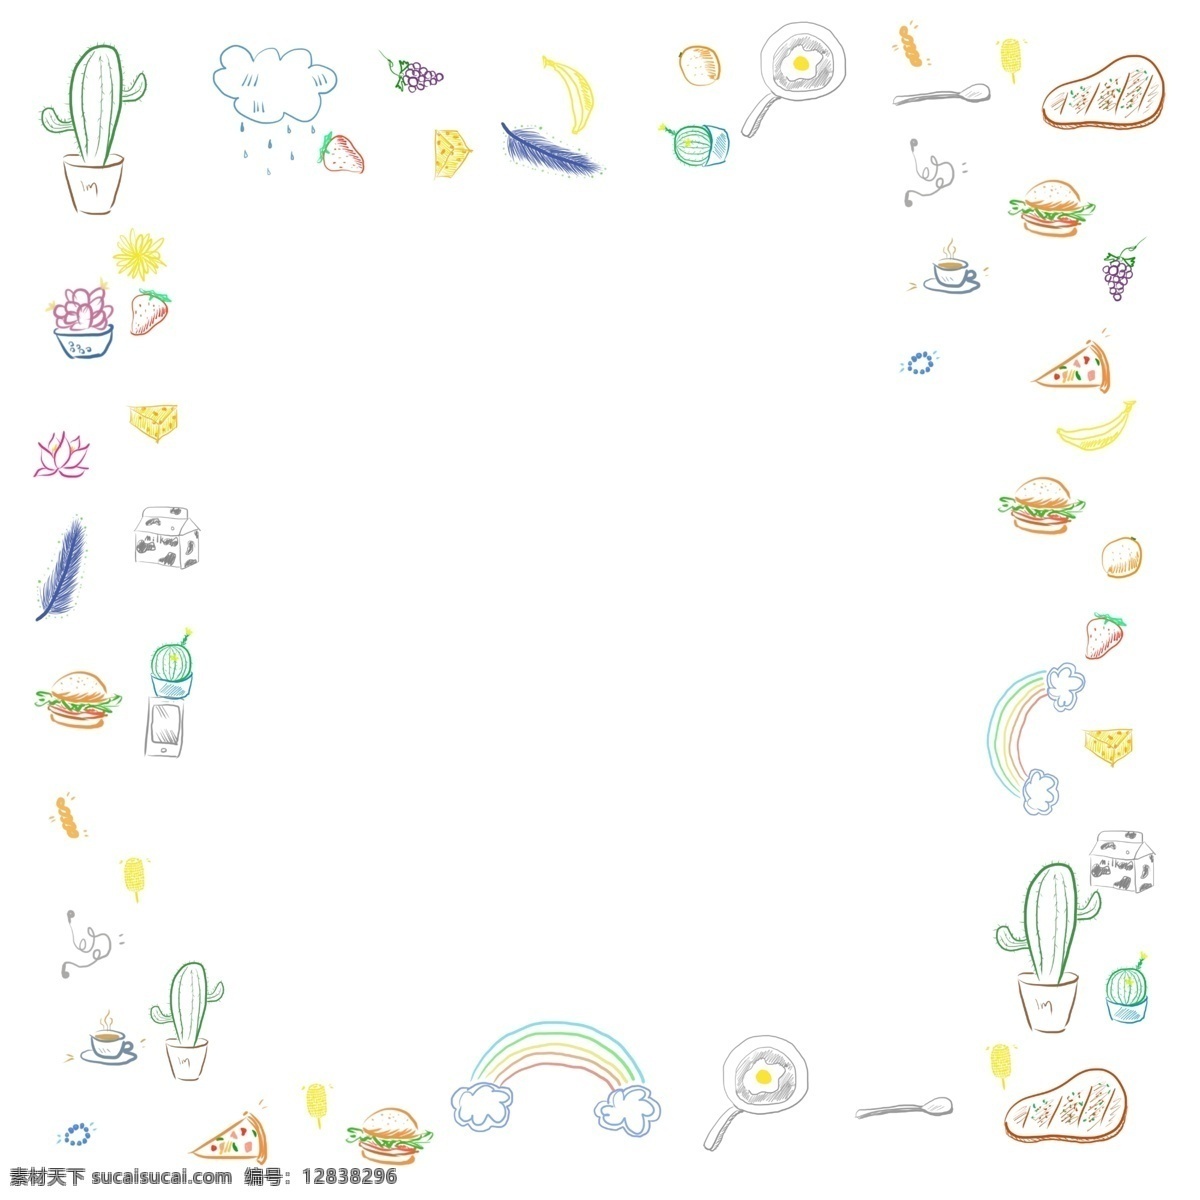 通用 彩色 简 笔画 简单 植物 食物 矩形 边框 免 抠 图 简笔画 手绘 png免抠图 彩虹 仙人掌 香蕉 汉堡 煎蛋 葡萄 云彩 牛排 牛奶